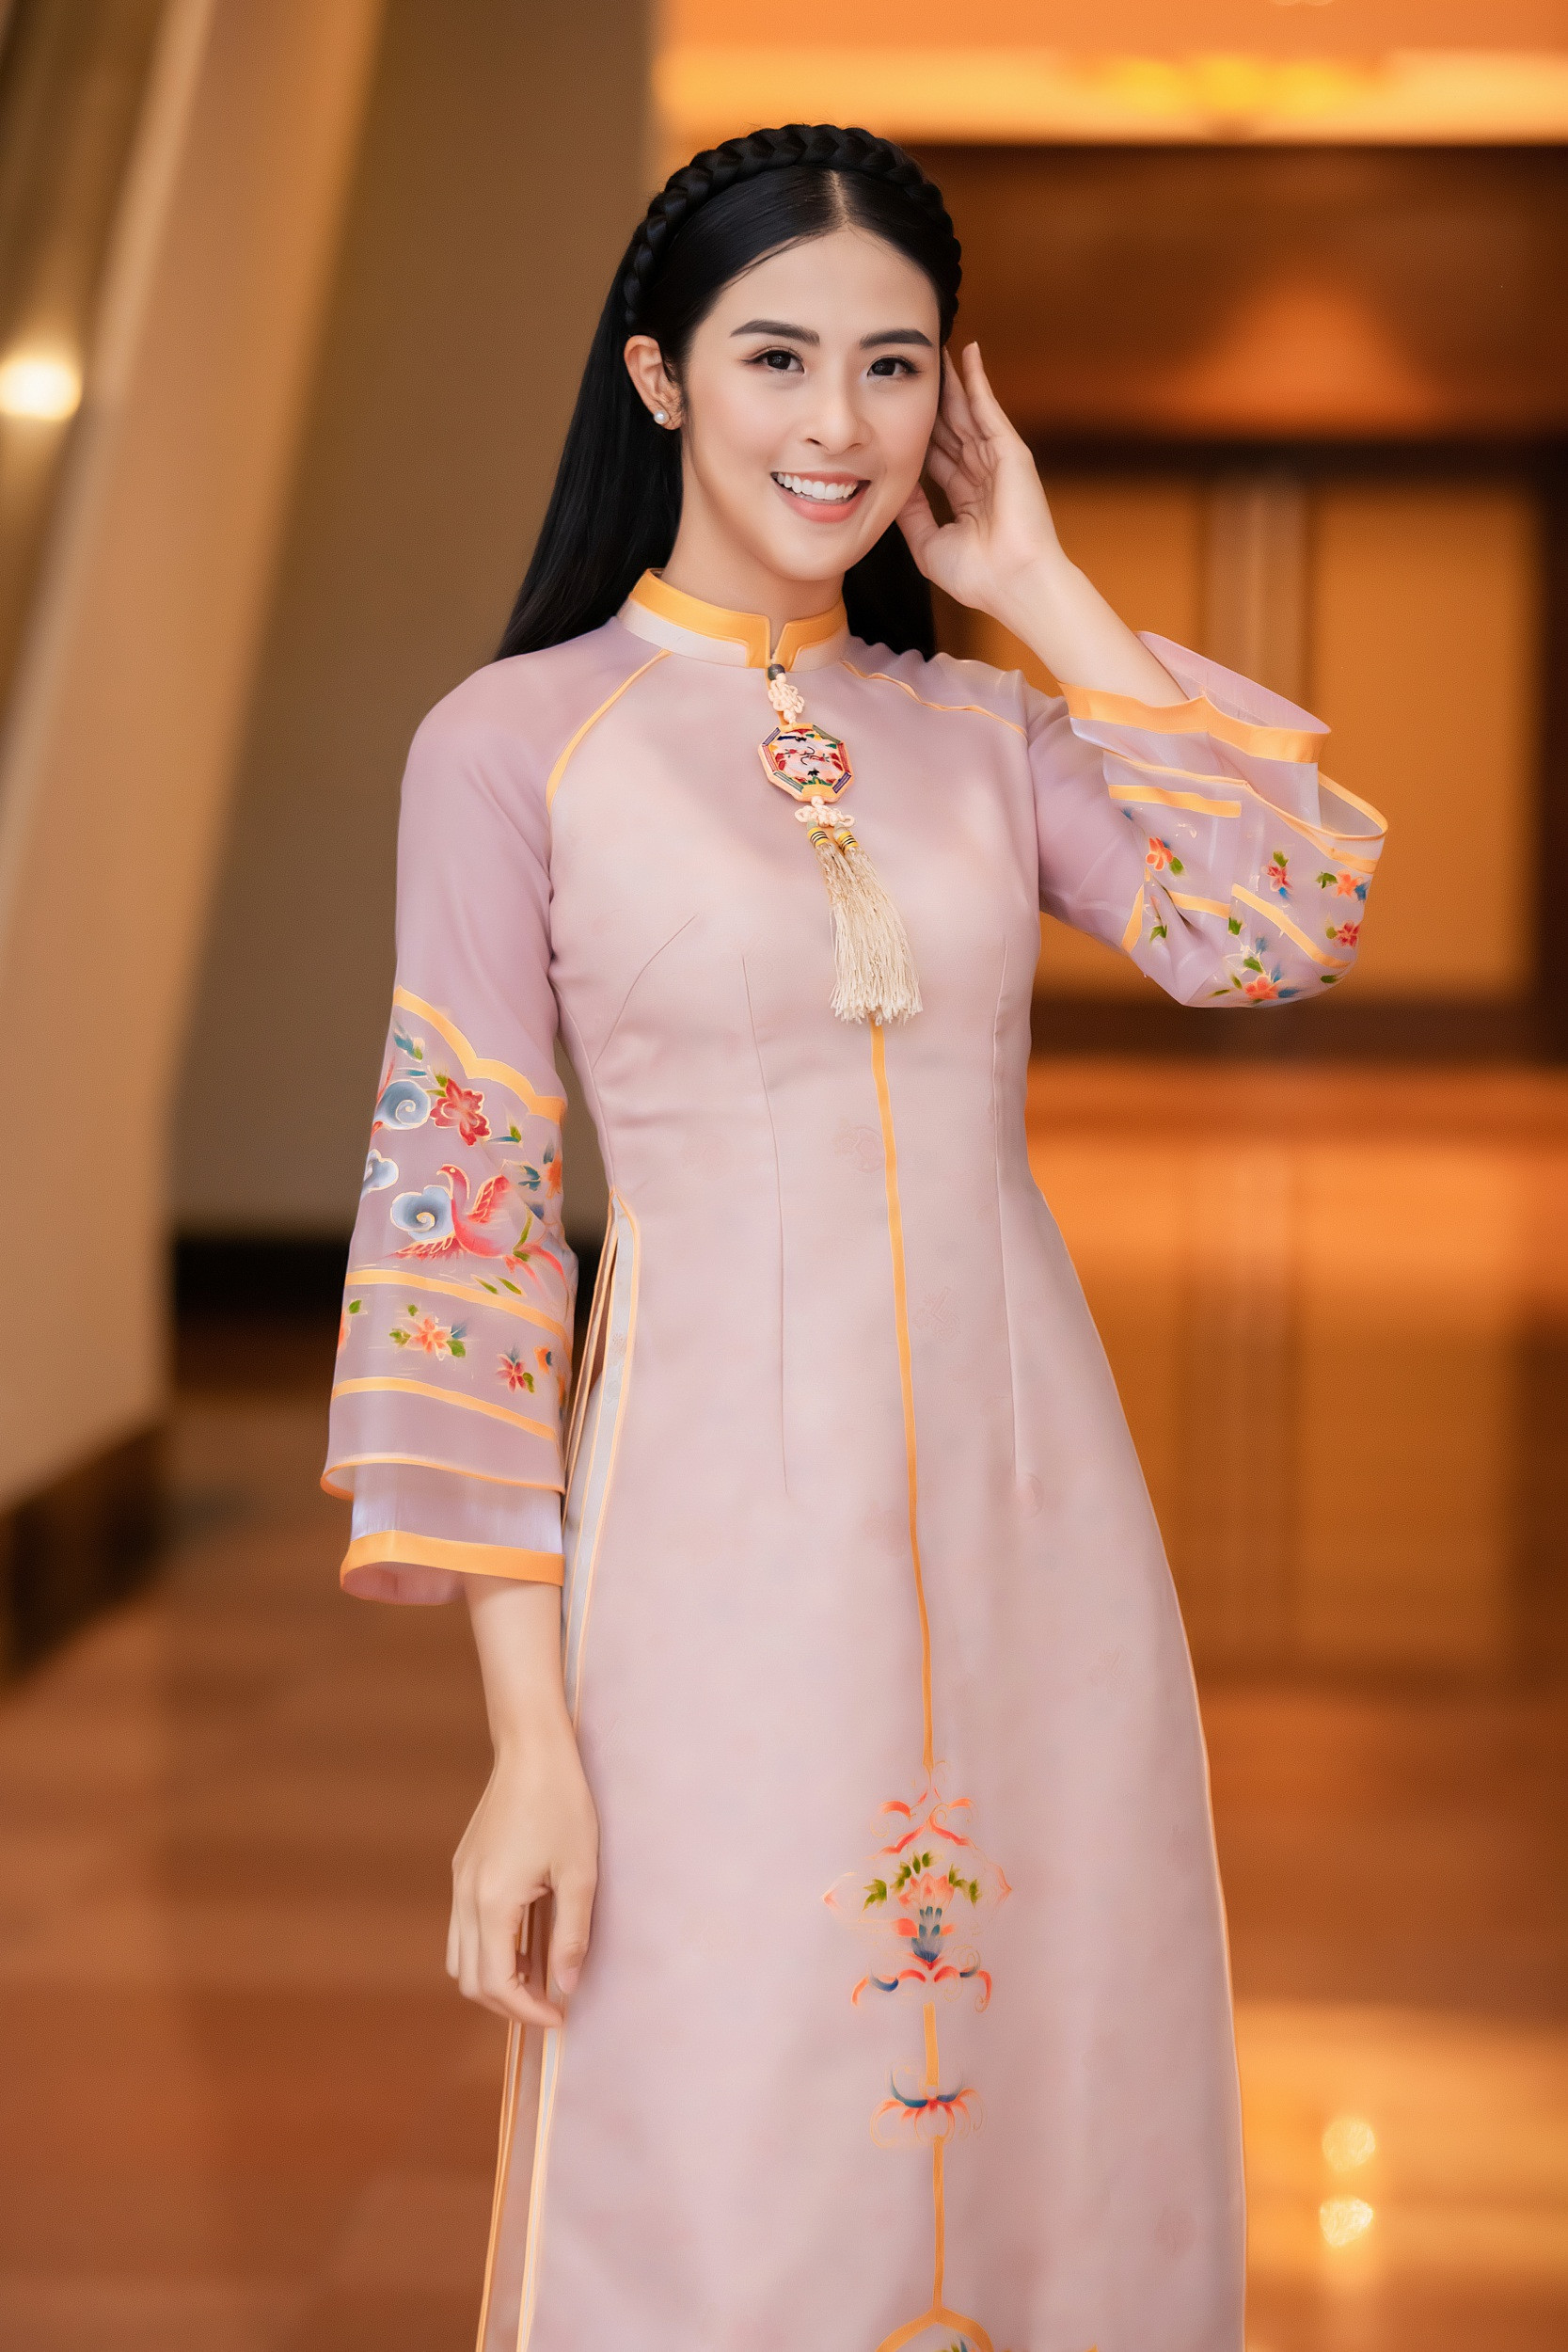 Áo dài, áo truyền thống của dân tộc Việt Nam. Hãy cùng chiêm ngưỡng những chiếc áo dài tuyệt đẹp với phong cách truyền thống và hiện đại. Và đừng quên, hãy tự tin khi mặc áo dài và thể hiện đẳng cấp của mình.